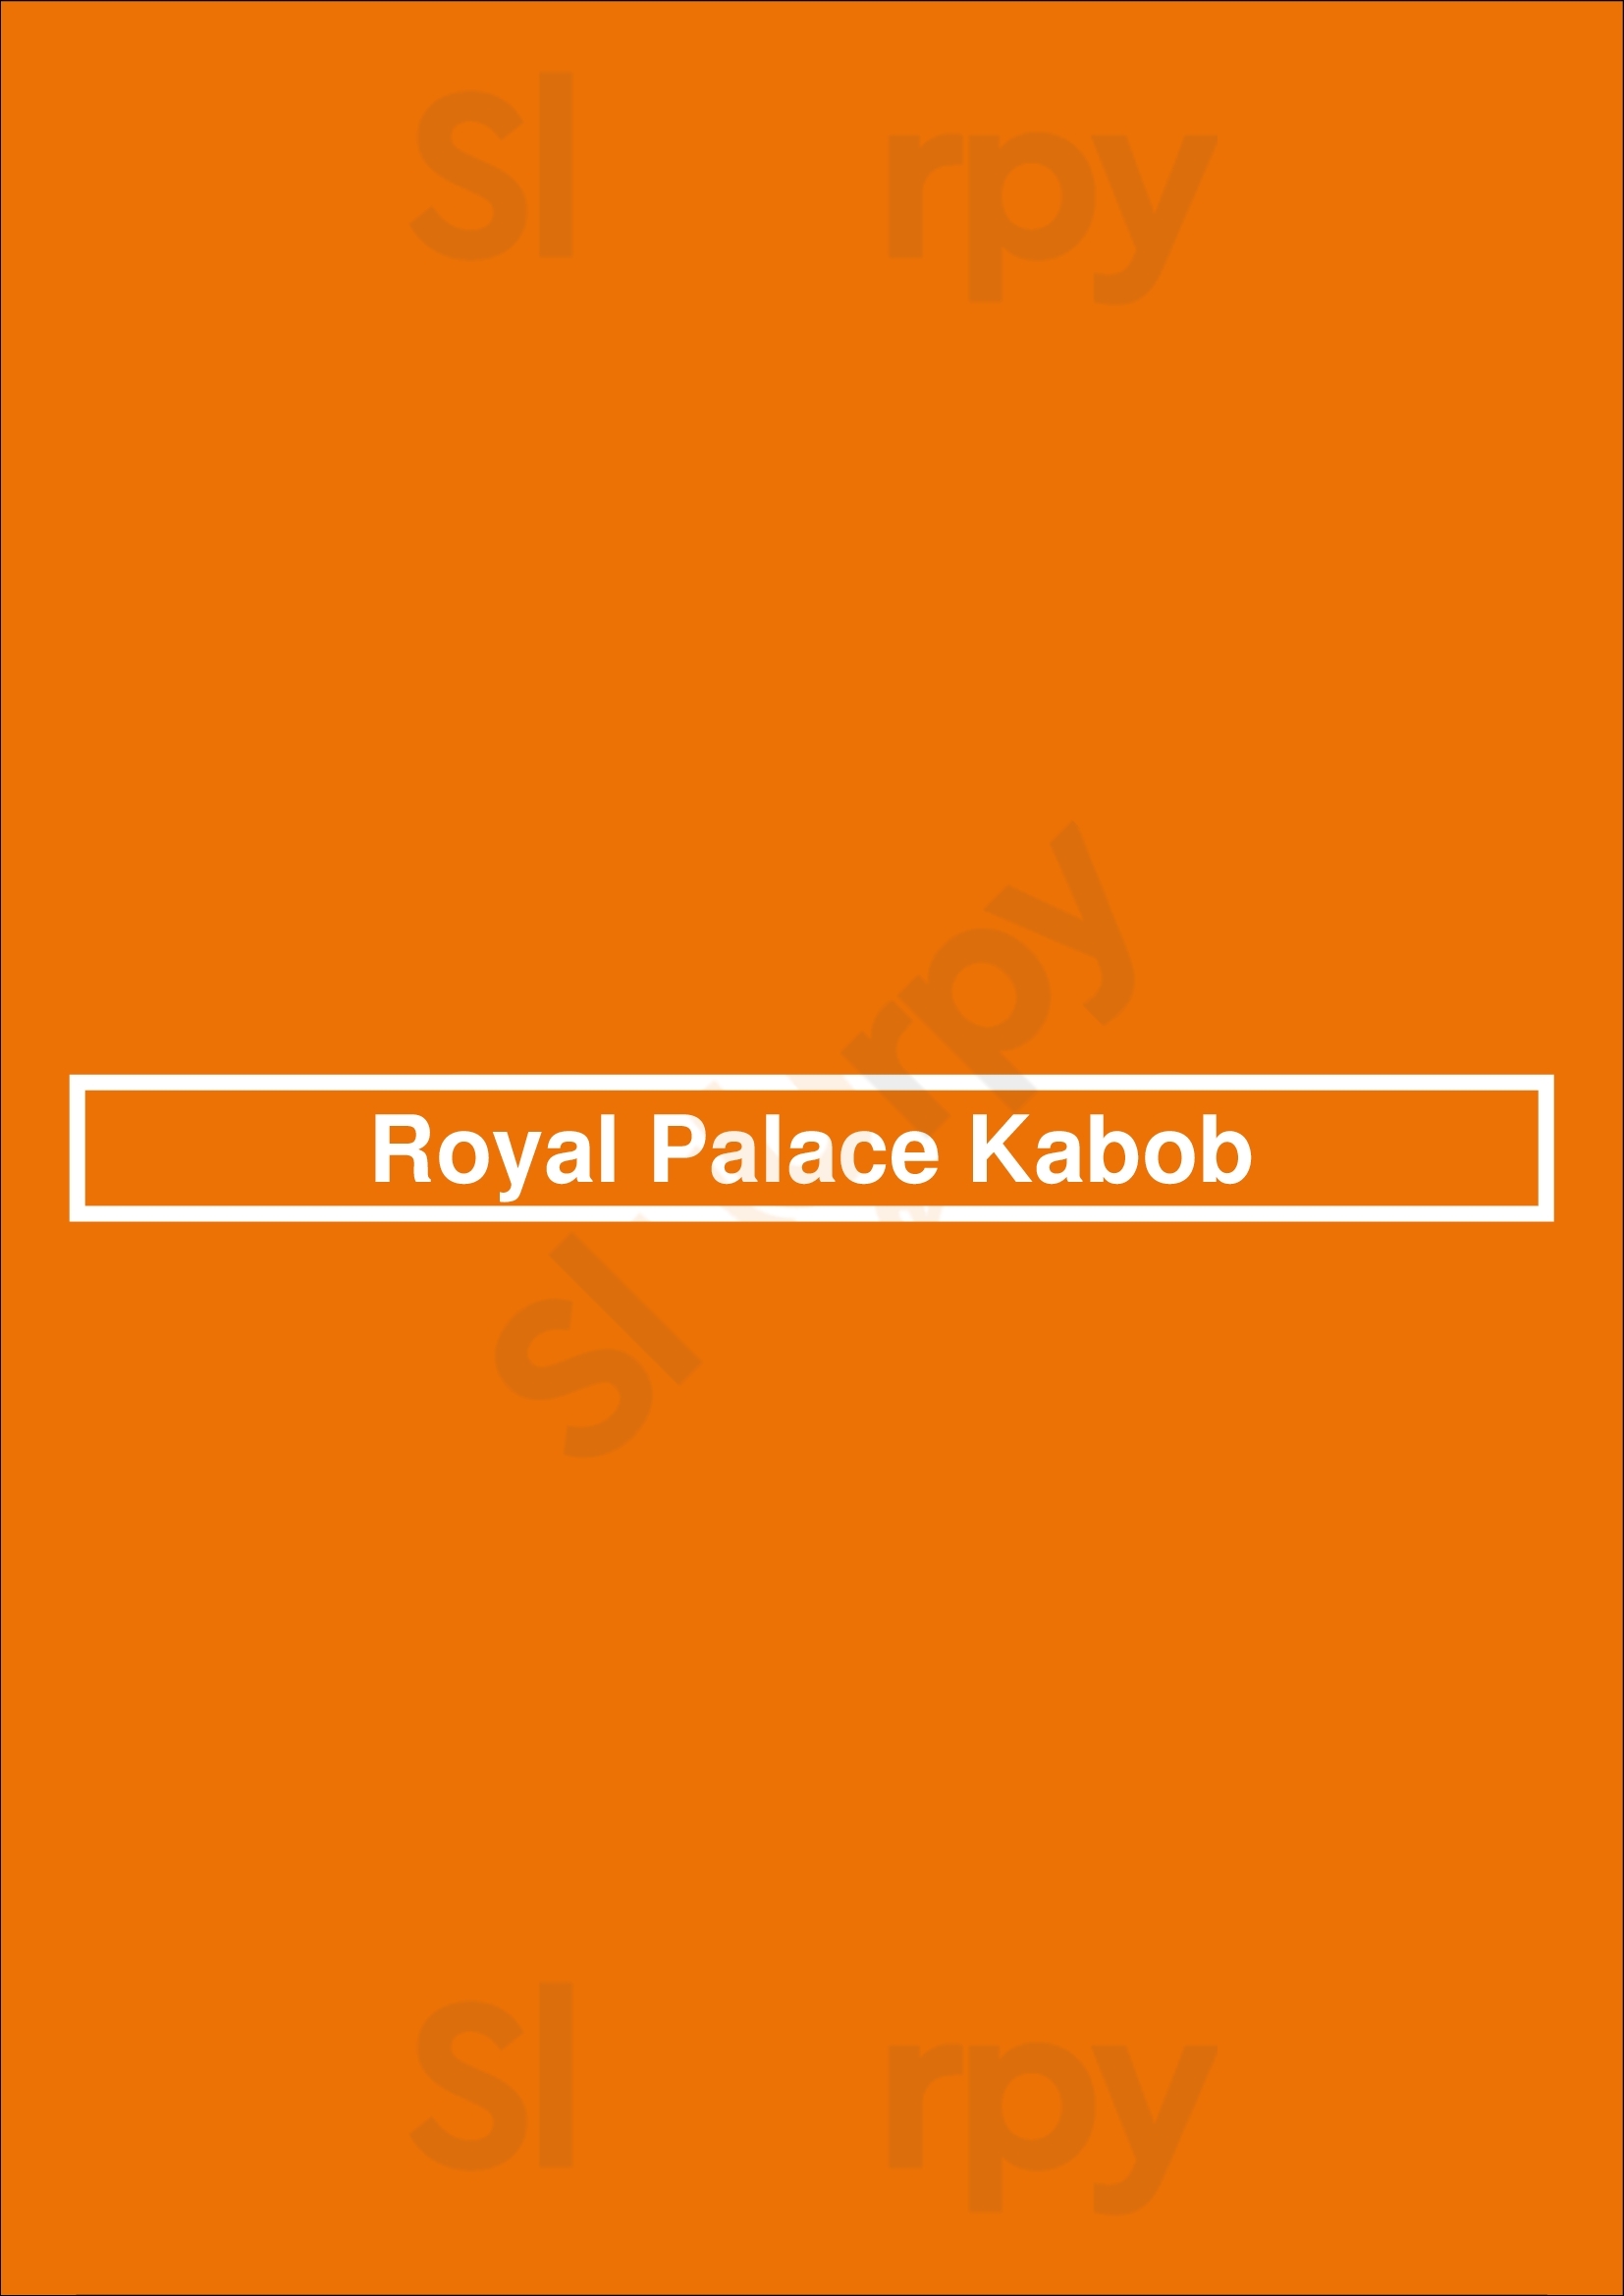 Royal Palace Kabob Alexandria Menu - 1